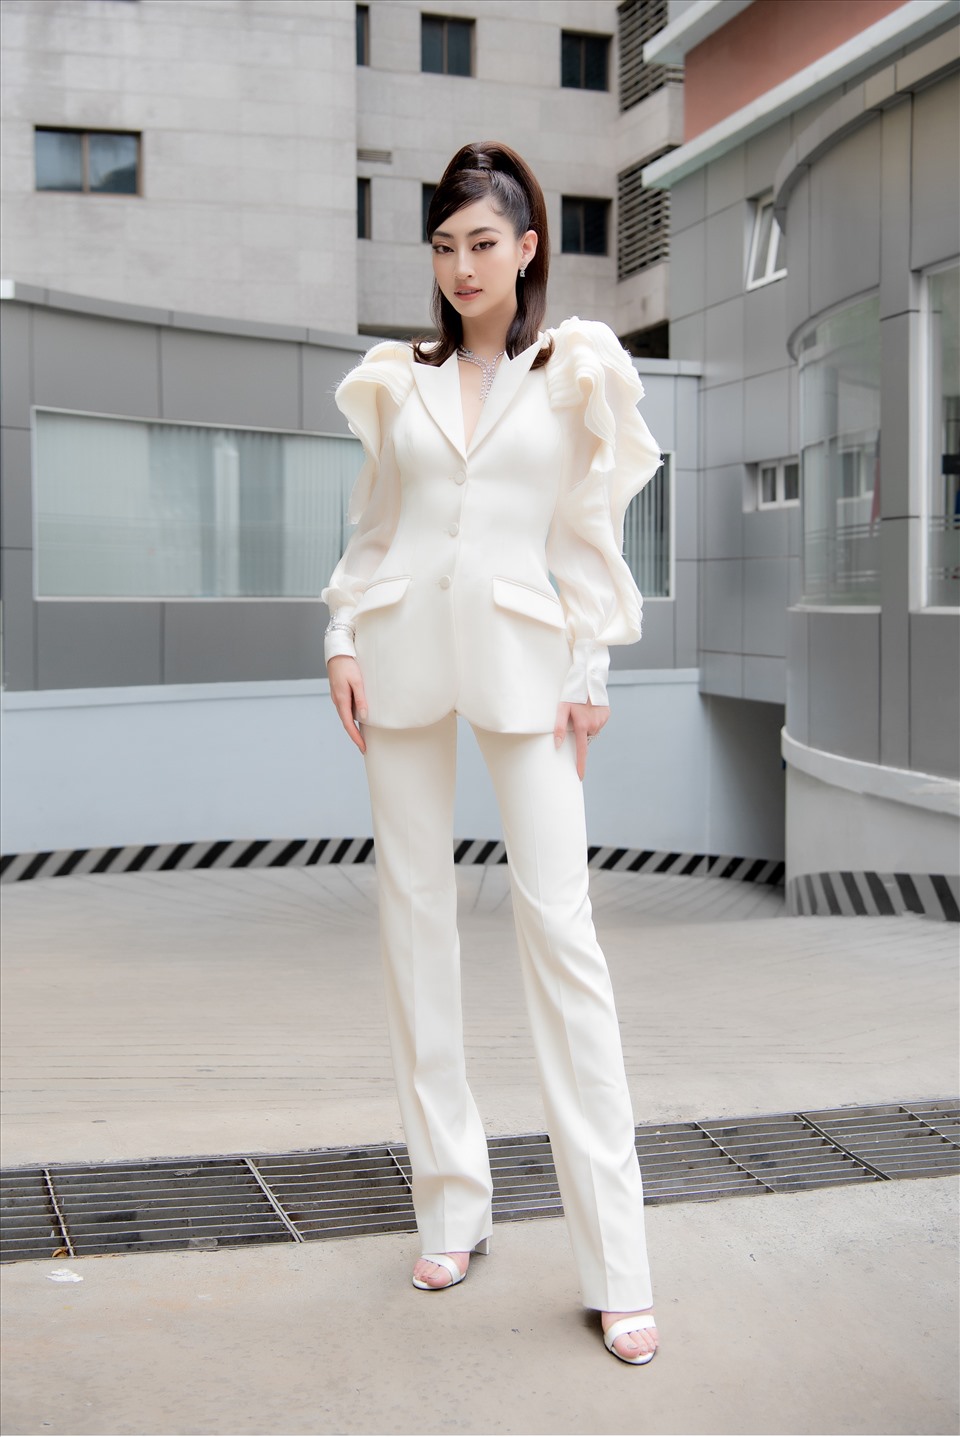 Đương kim Hoa hậu Lương Thuỳ Linh xuất hiện trong thiết kế độc đáo đến từ NTK Jenny K Trần. Cô vừa đảm nhận cương vị đại sứ Miss World Vietnam 2022 vừa nắm giữ vai trò thành viên ban giám khảo. Nàng hậu sinh năm 2000 vừa trở về nước sau hơn 1 tuần tham dự Paris Fashion Week 2022 với vai trò khách mời.